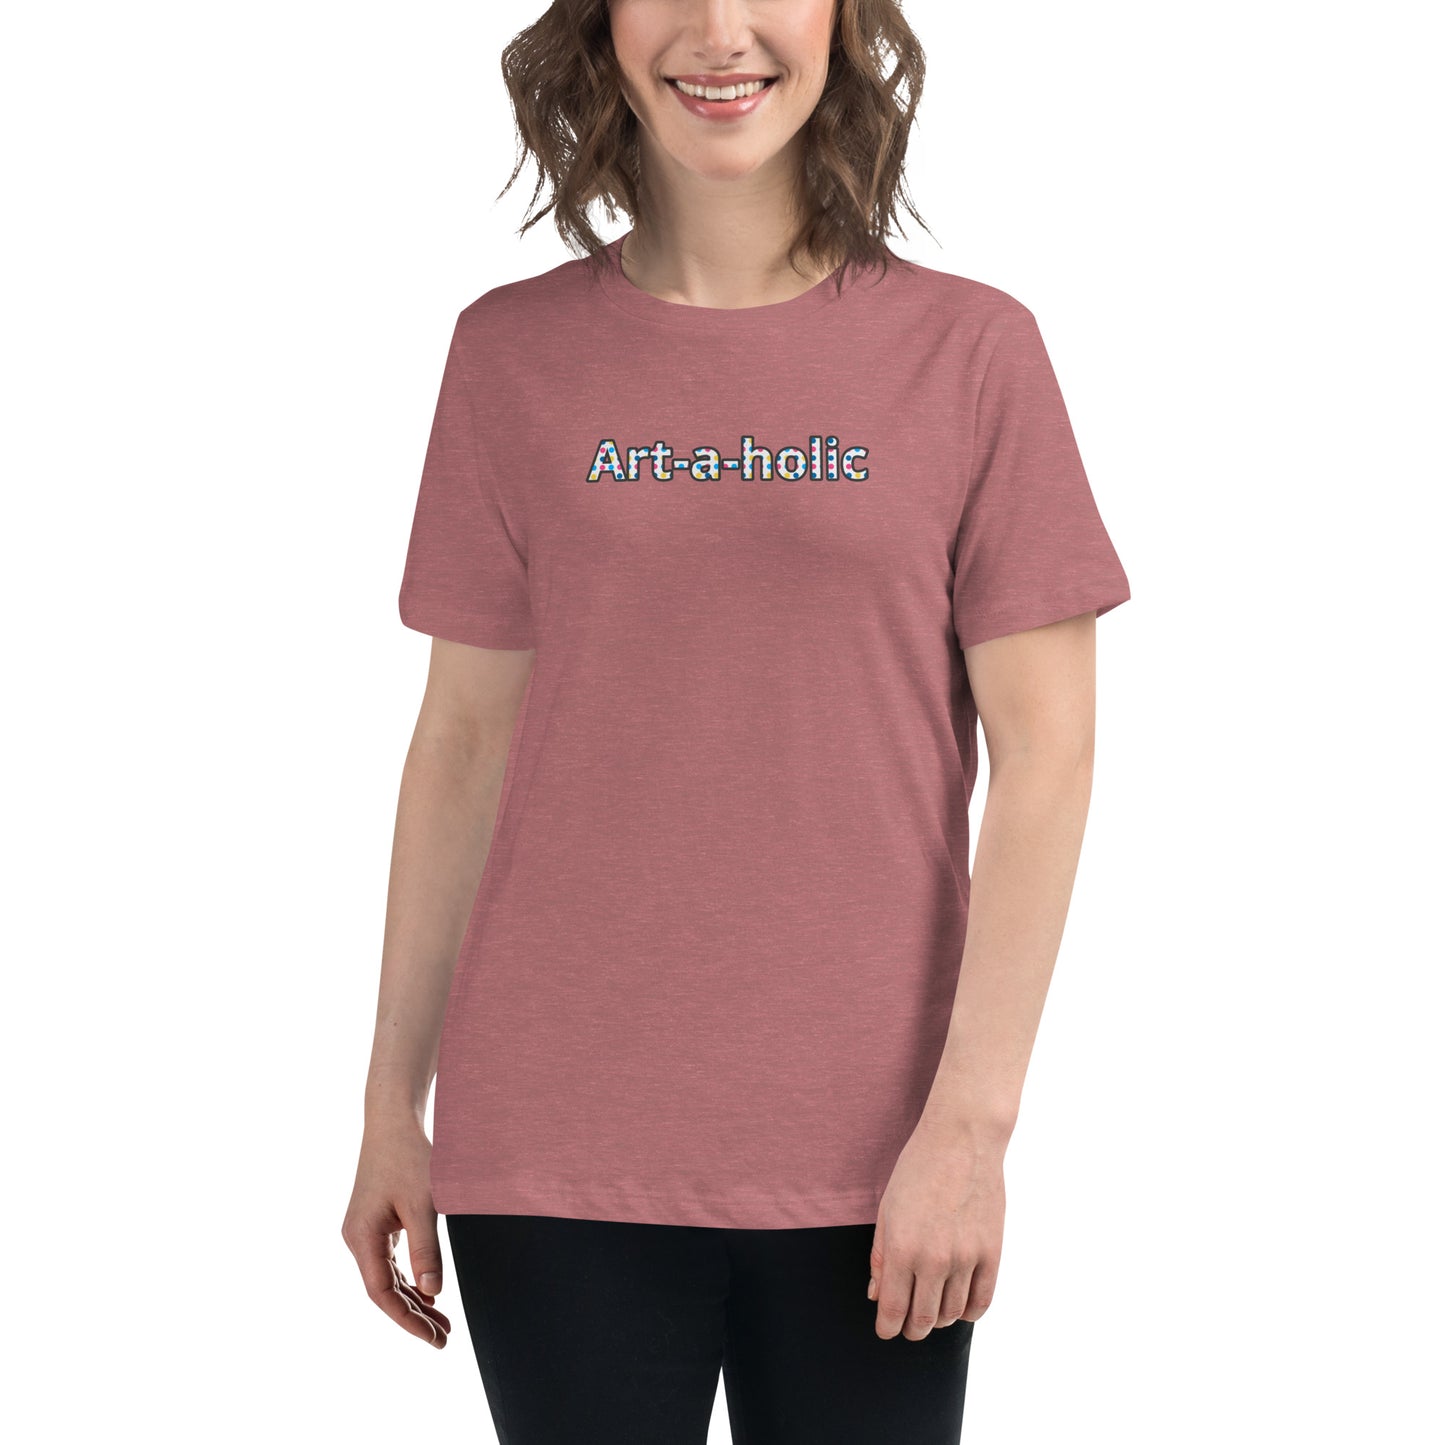 Women's Art-a-holic Relaxed T-Shirt